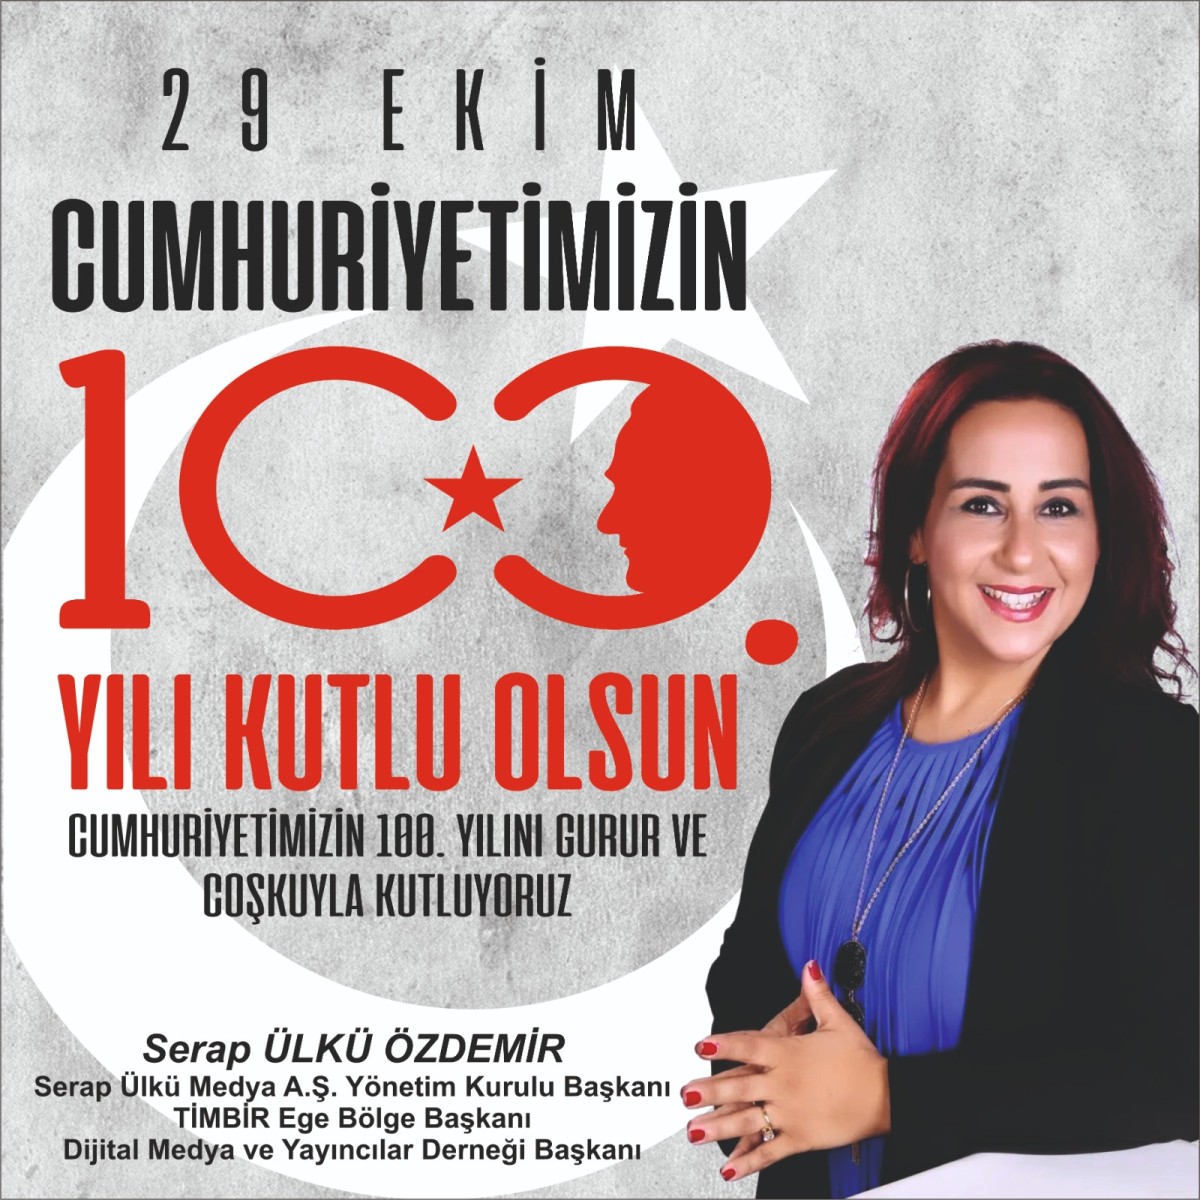 Timbir ege bölge başkanı dijital medya ve yayıncılar derneği başkanı Serap ülkü medya a.ş yönetim kurulu başkanı Serap Ülkü Özdemir'in 100. Yıl mesajı